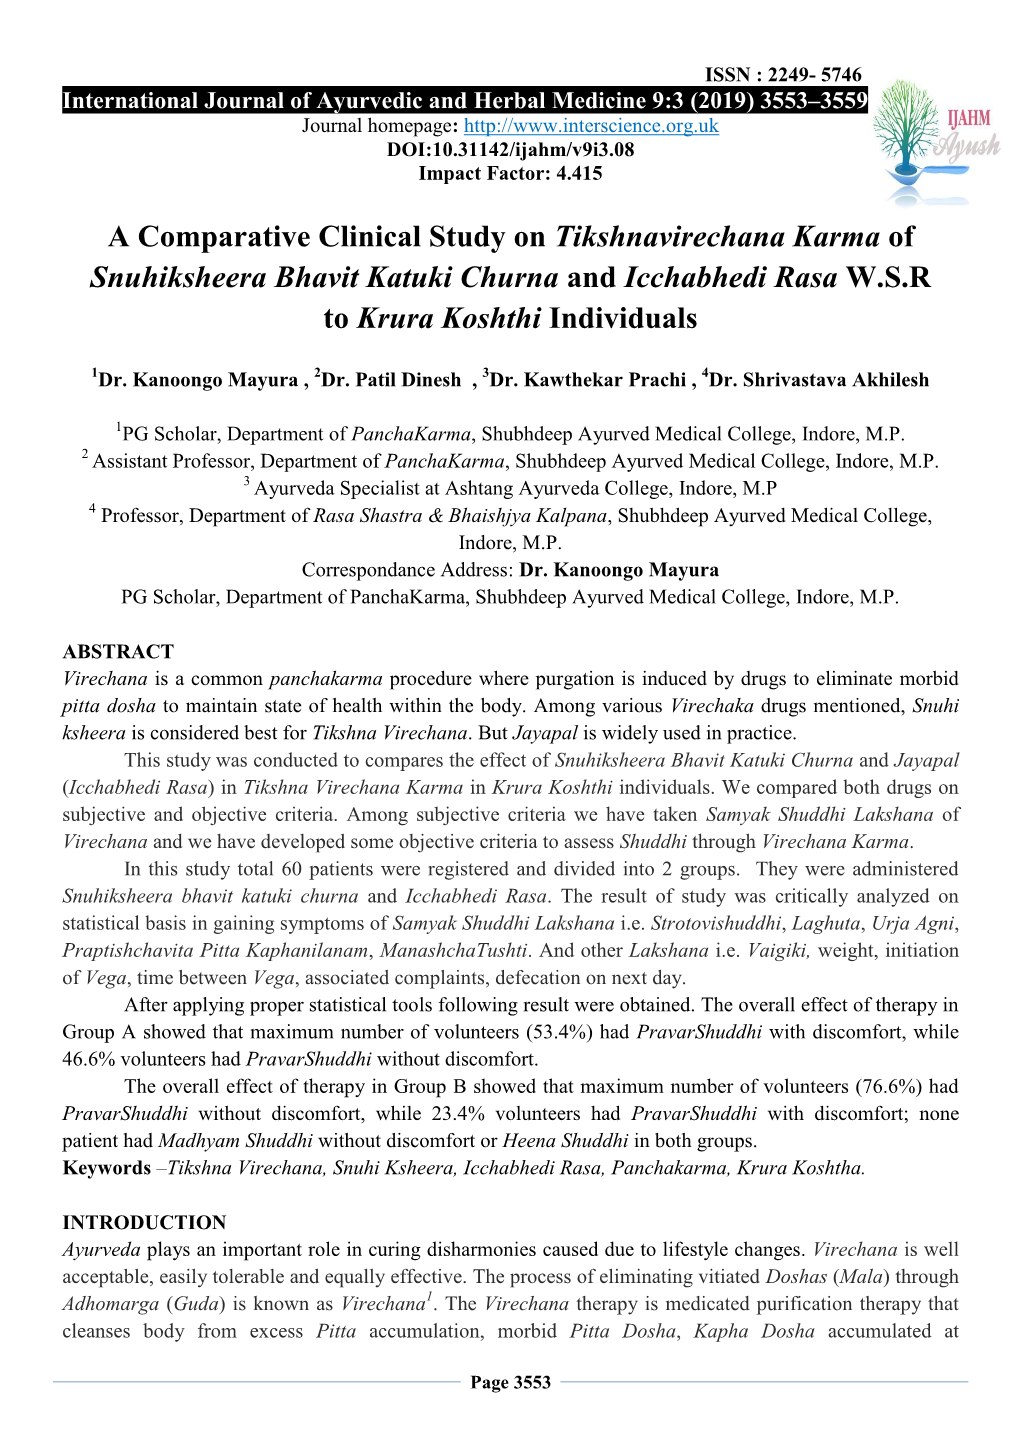 A Comparative Clinical Study on Tikshnavirechana Karma of Snuhiksheera Bhavit Katuki Churna and Icchabhedi Rasa W.S.R to Krura Koshthi Individuals